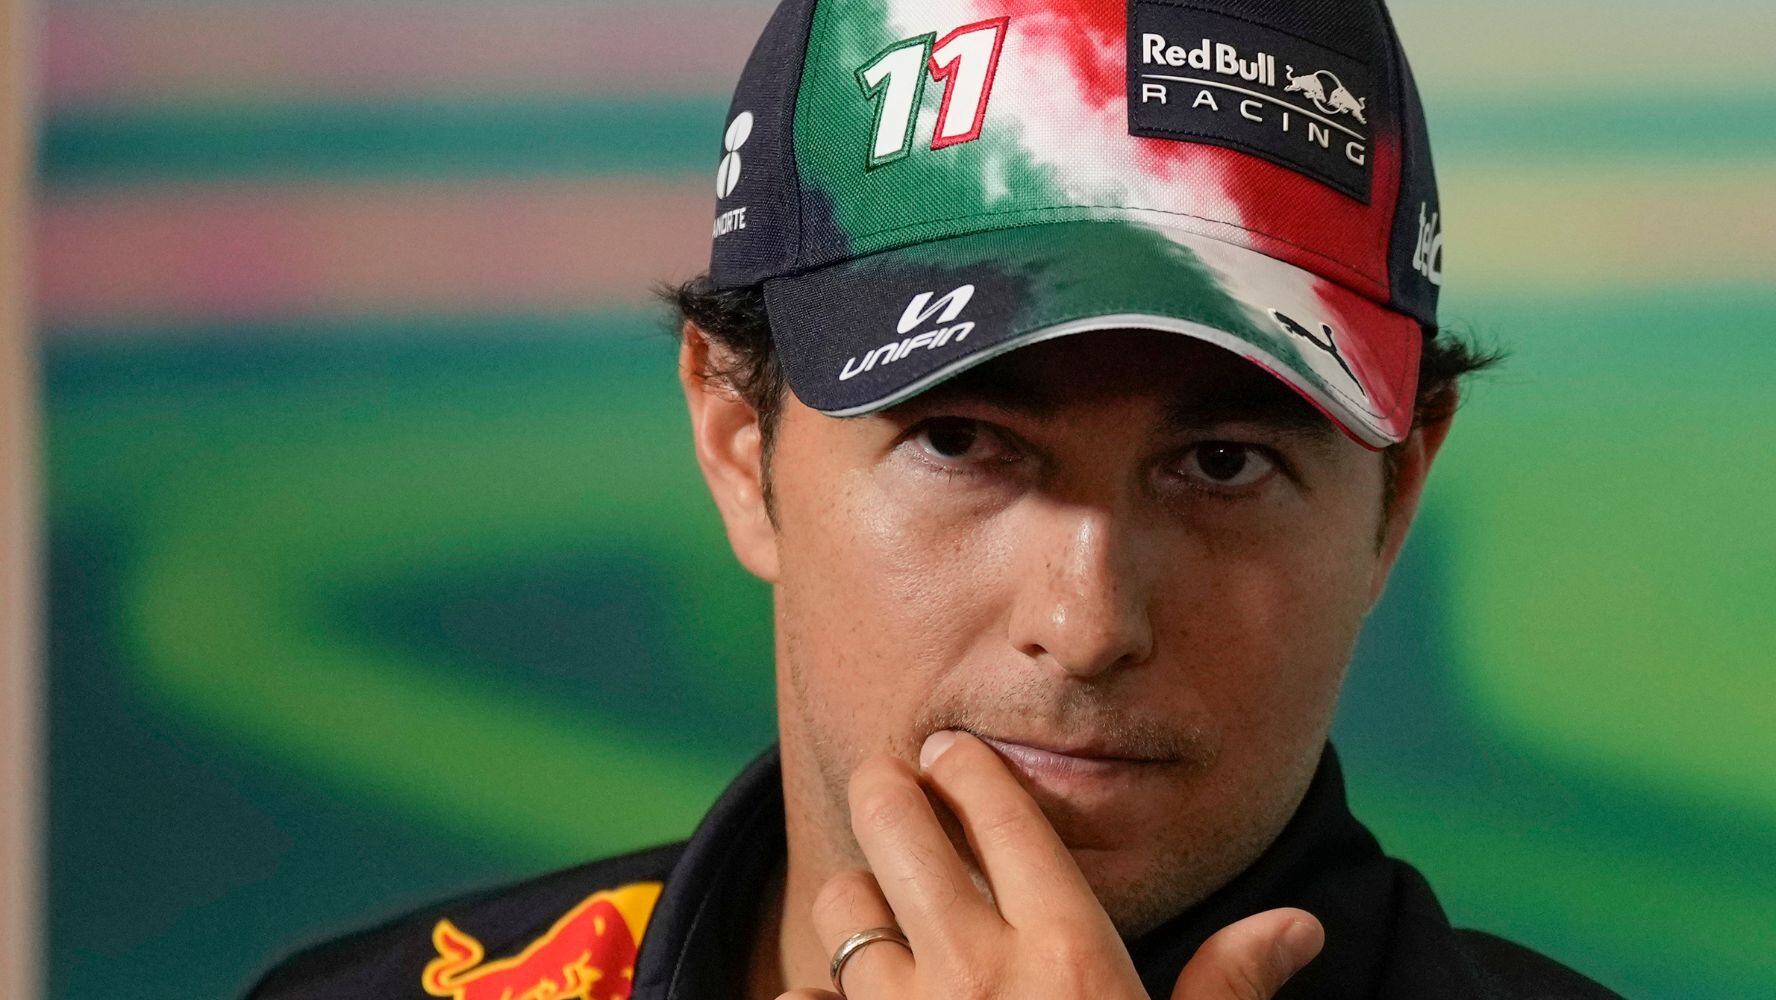 ‘Checo’ Pérez evalúa su desempeño en la F1: ‘Quiero recuperar mi forma’